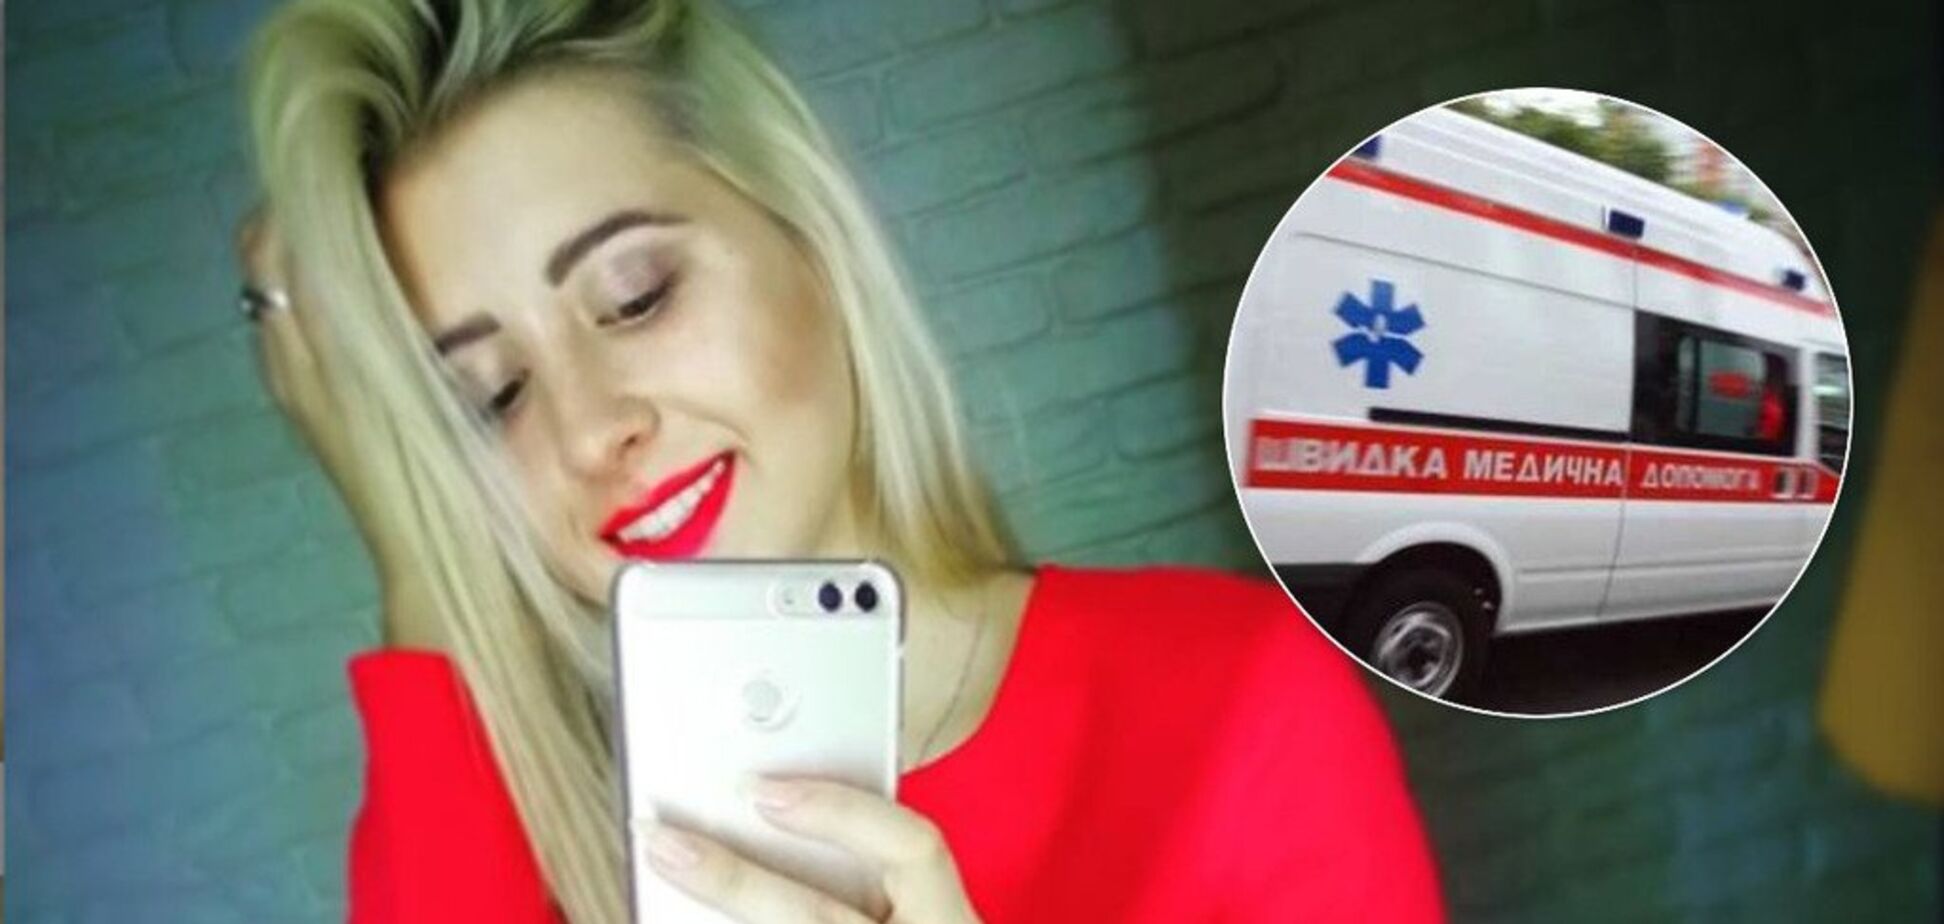 Трагическая смерть курсантки в Харькове: врачи думали, что она наркоманка, а девушку разбил инсульт